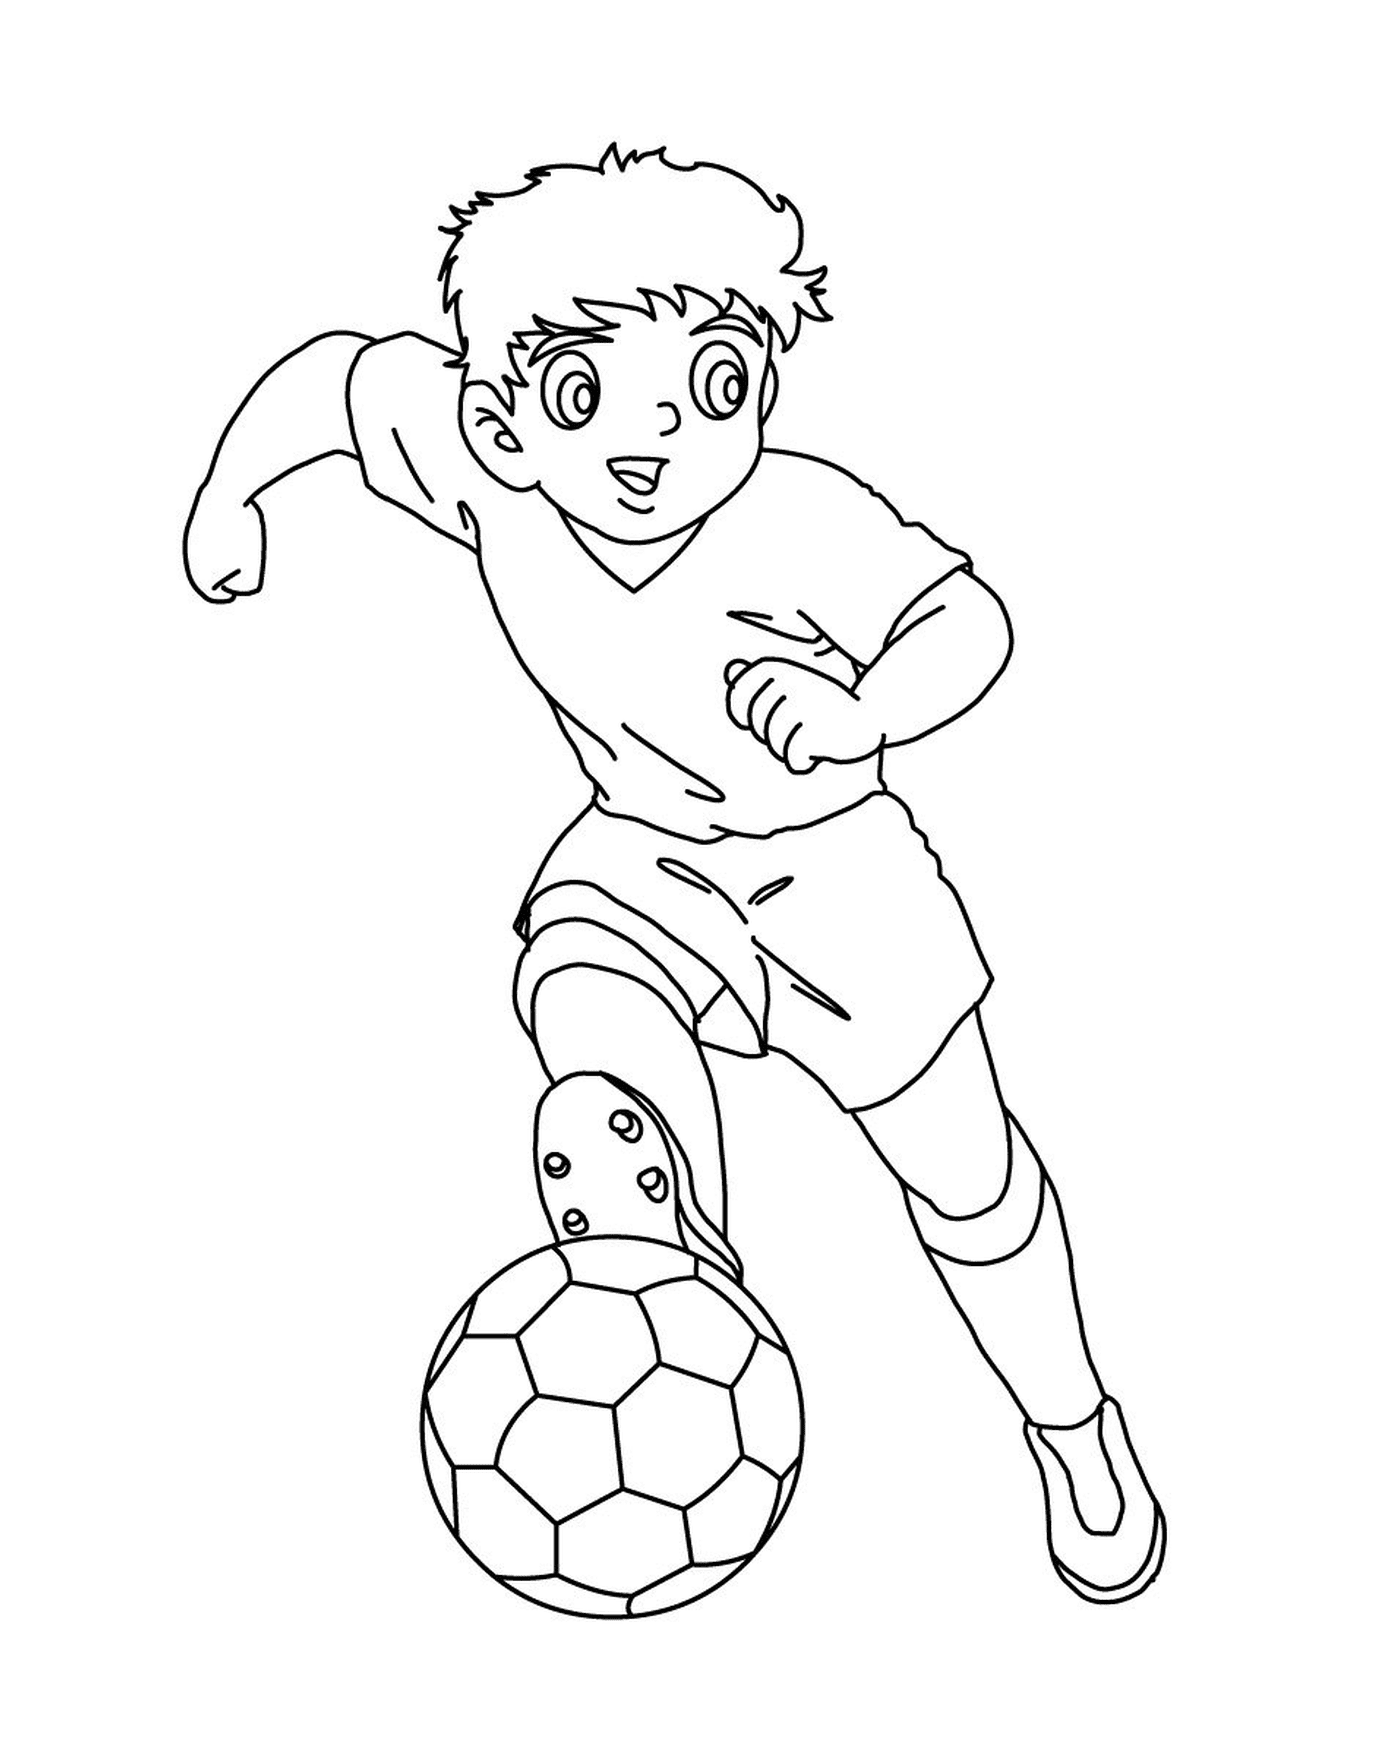  Capitano Tsubasa, manga di football 